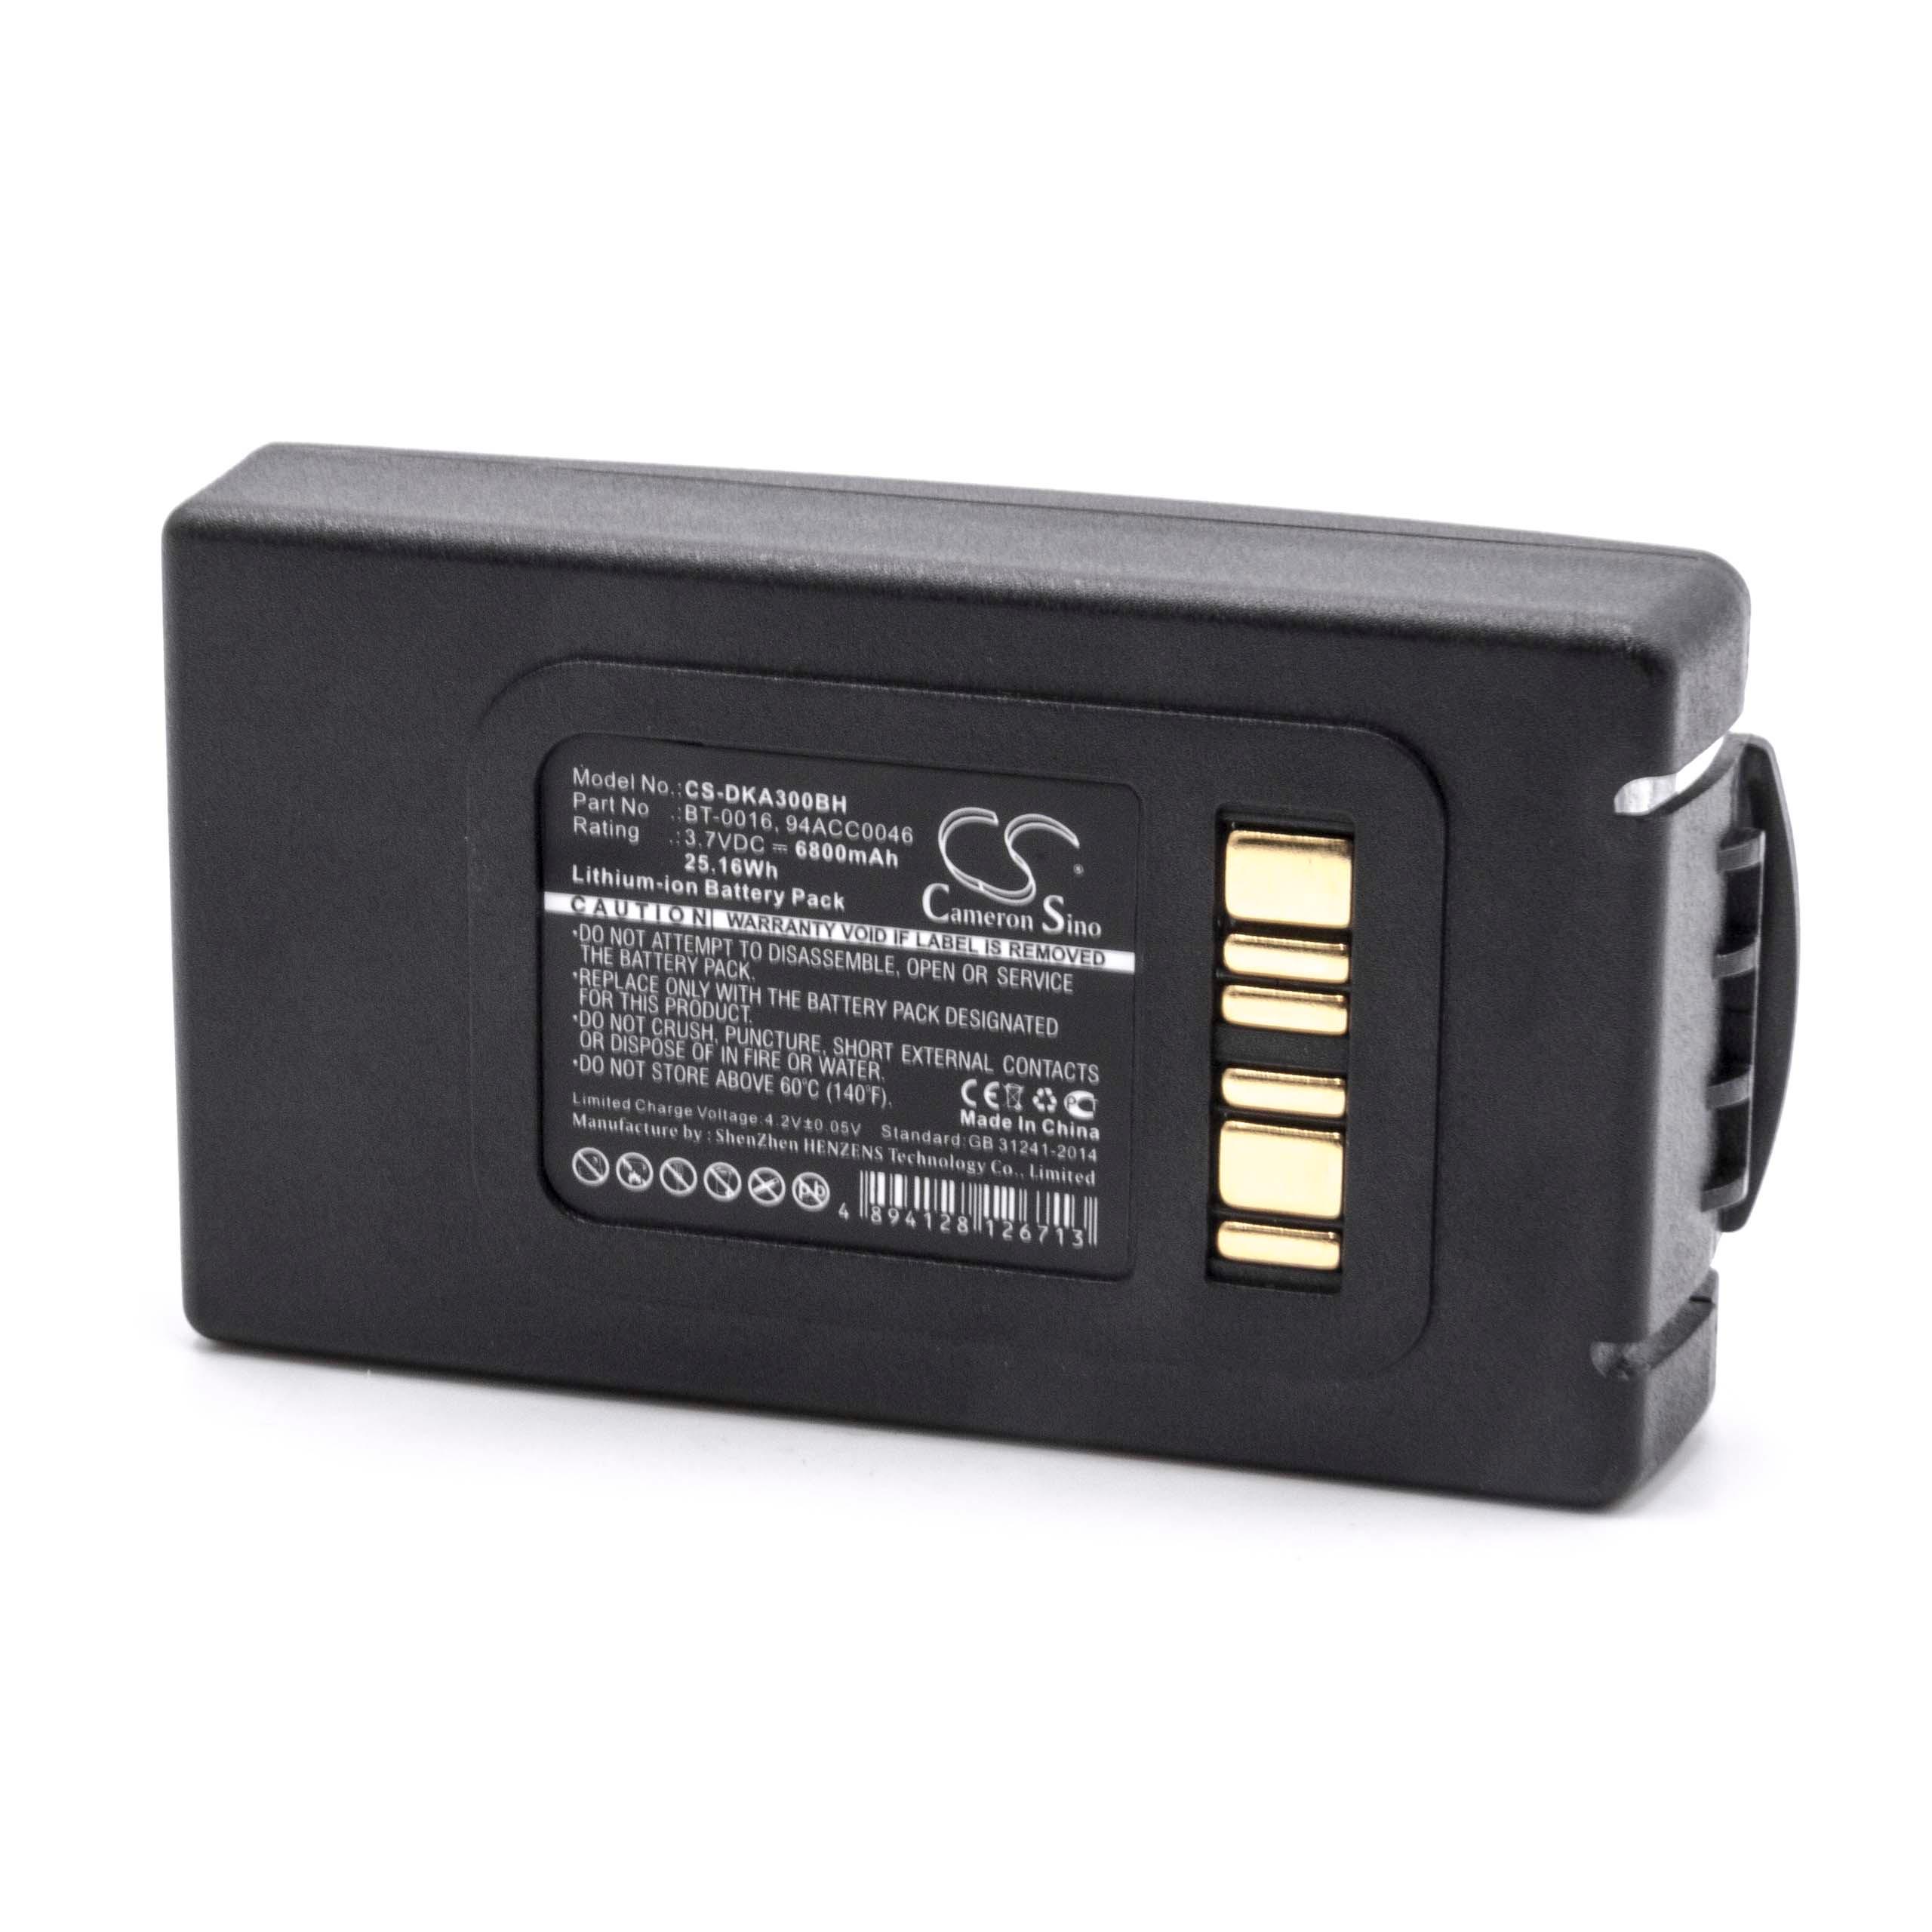 Batterie remplace Datalogic BT-0016, 94ACC0048 pour scanner de code-barre - 6800mAh 3,7V Li-ion